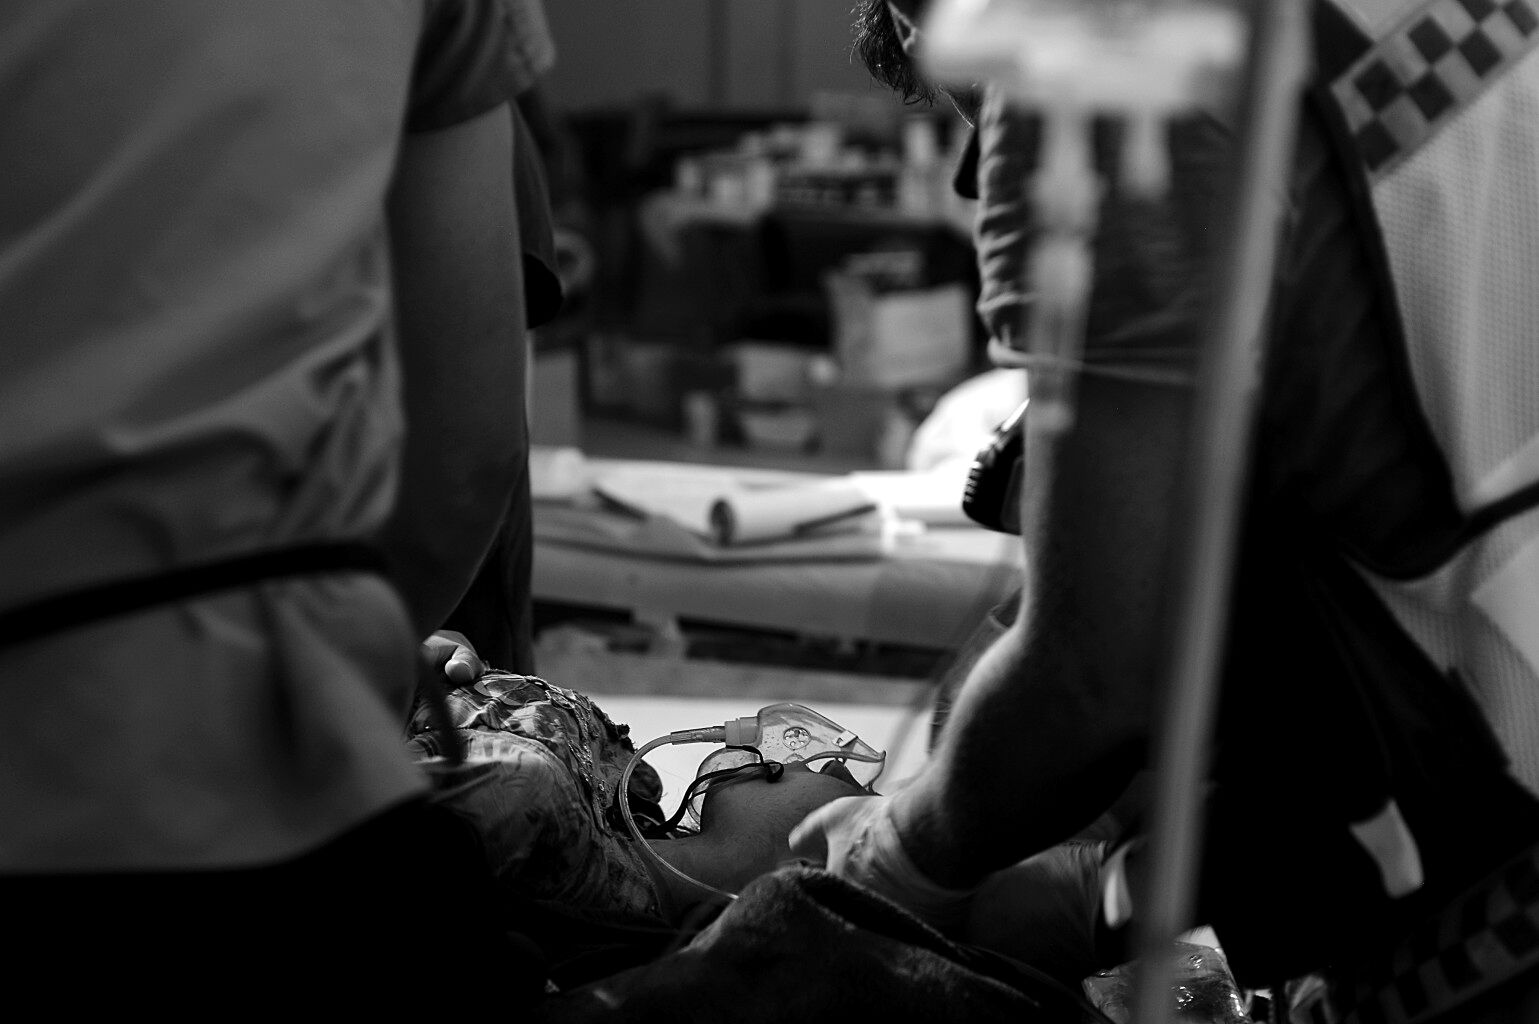 Eine Patientin wird auf einer Trage liegend beatmet und von zwei Personen behandelt.